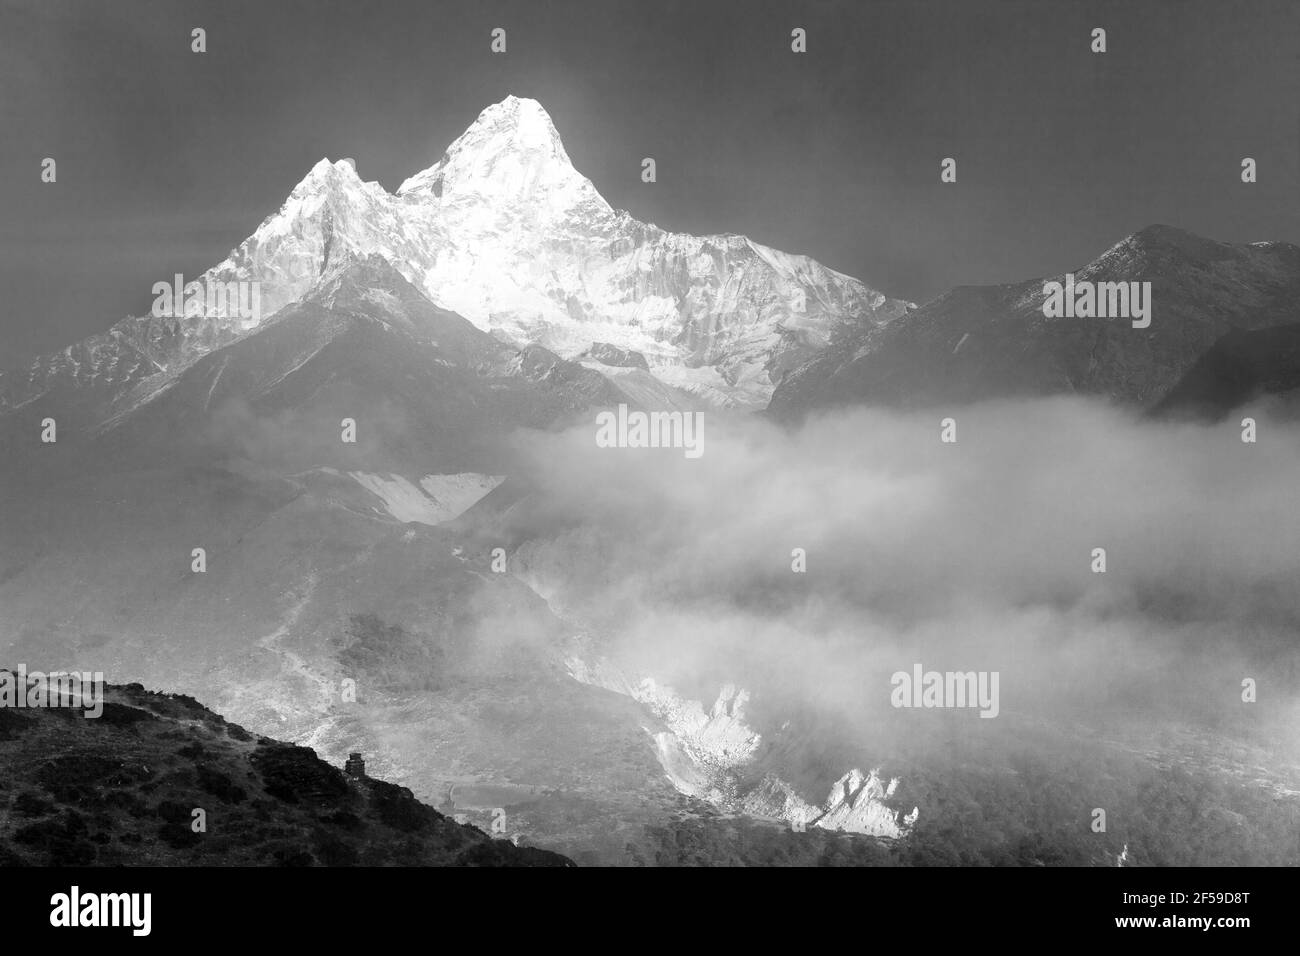 Monte Ama Dablam dentro de las nubes, vista en blanco y negro, camino al campamento base Everest, valle Khumbu, parque nacional Sagarmatha, área Everest, Nepal Foto de stock